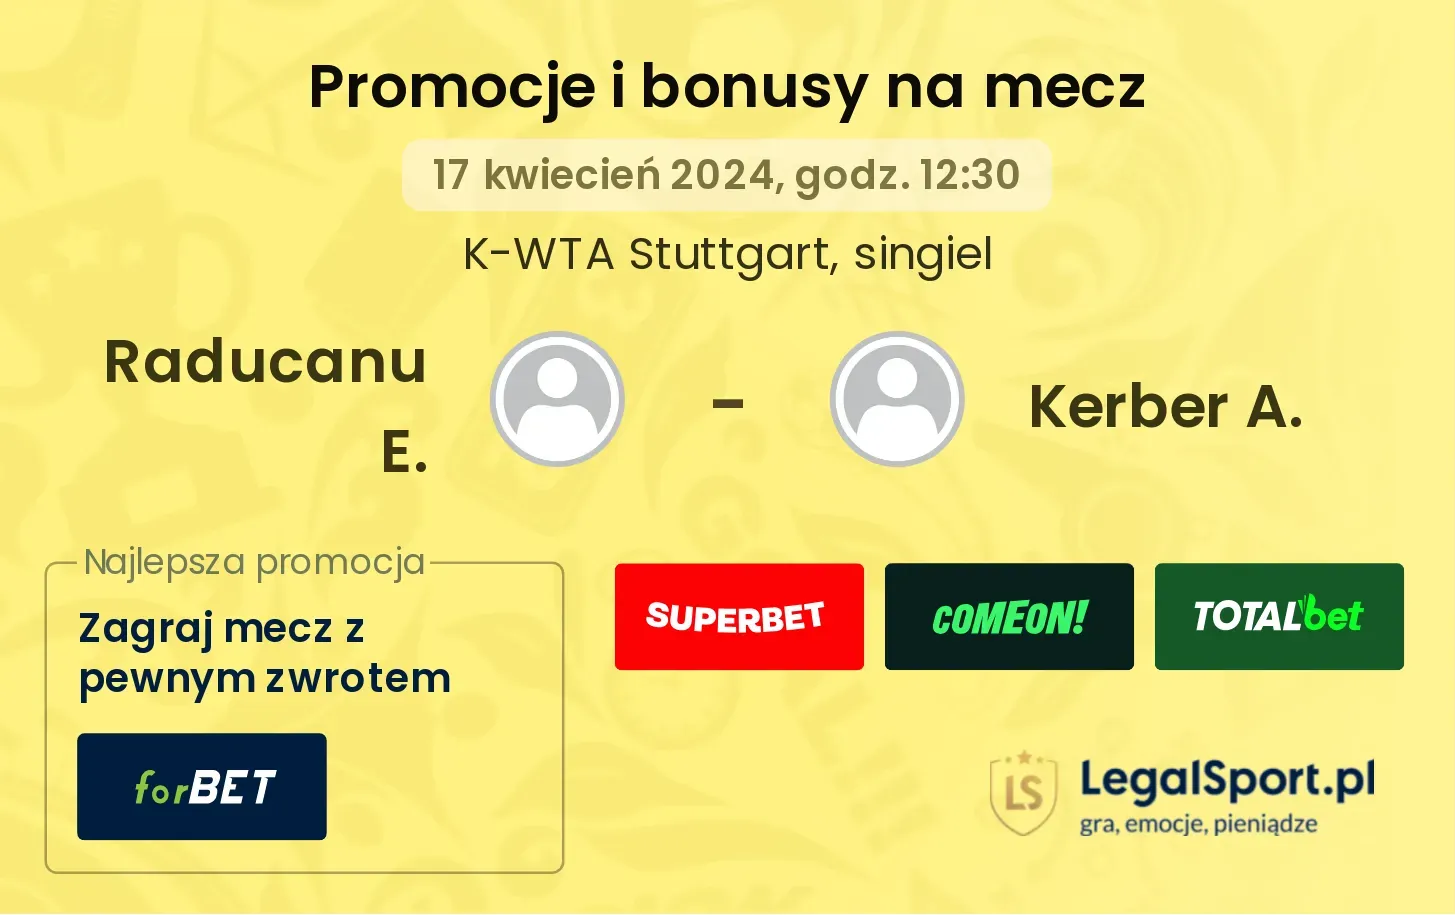 Raducanu E. - Kerber A. promocje bonusy na mecz